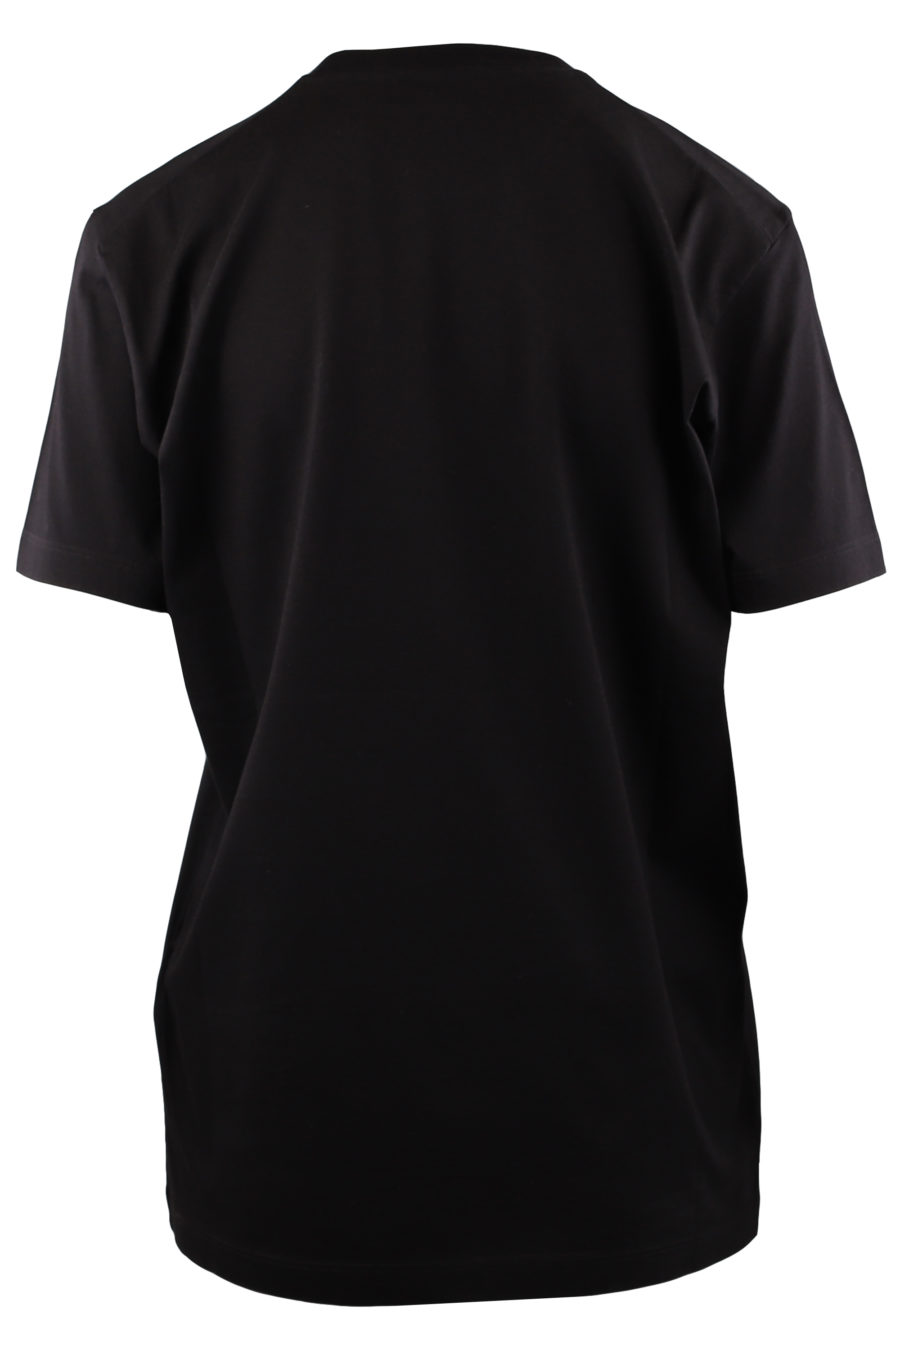 Schwarzes T-Shirt mit "I can't" Logo - dc4e2f88c61046b522f2ac030463114e20344010